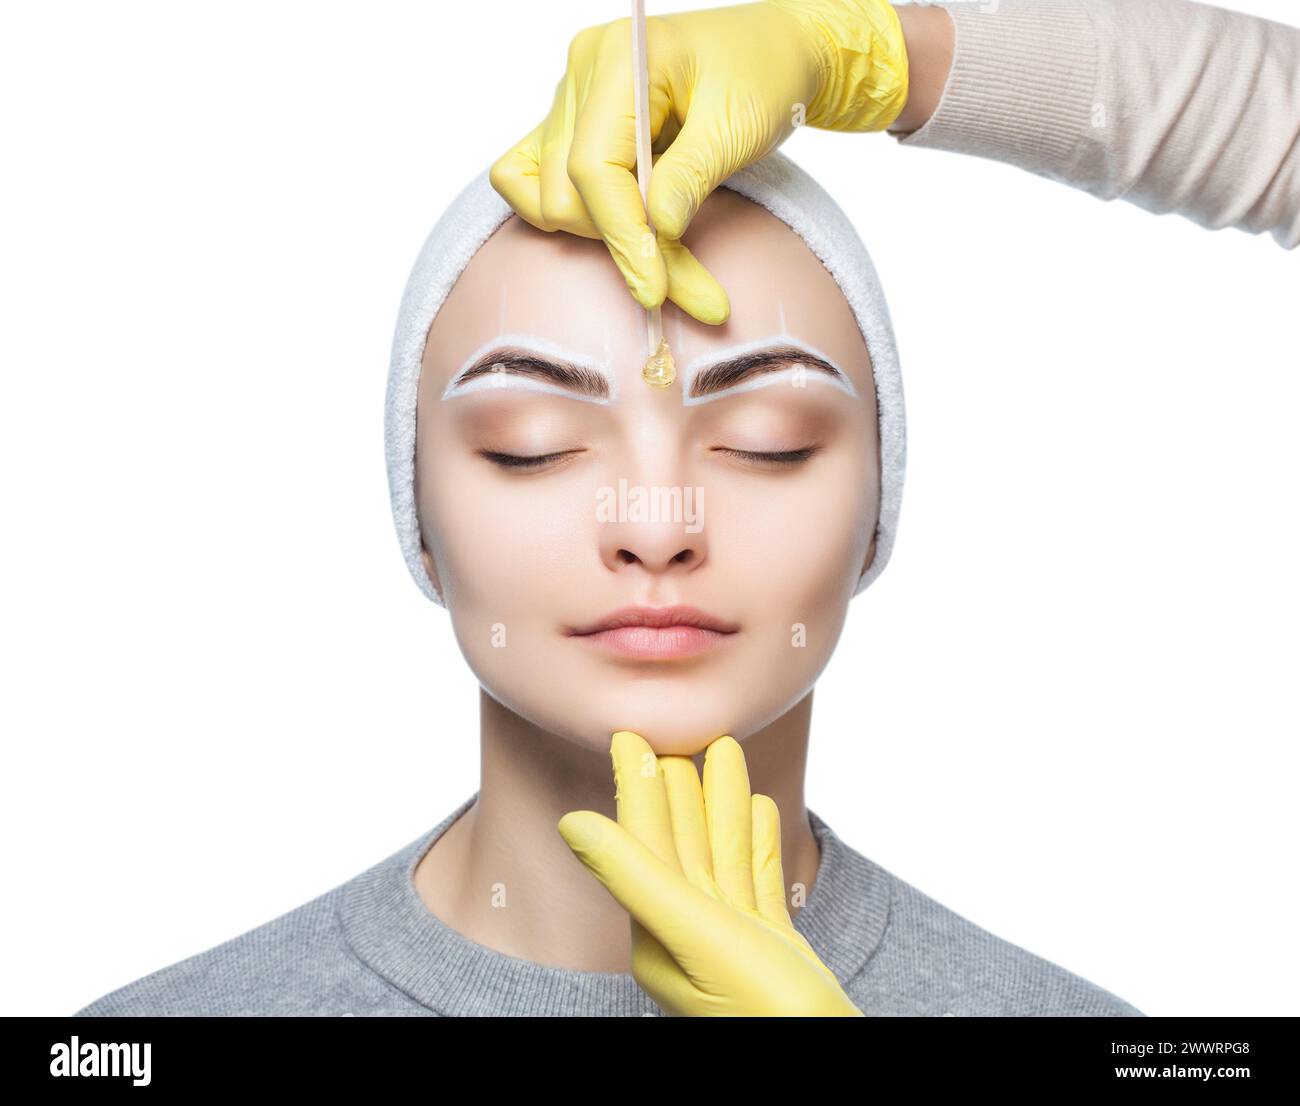 Die Make-up-Künstlerin zupft sich die Augenbrauen, bevor sie im Schönheitssalon dauerhaft schminkt. Stockfoto